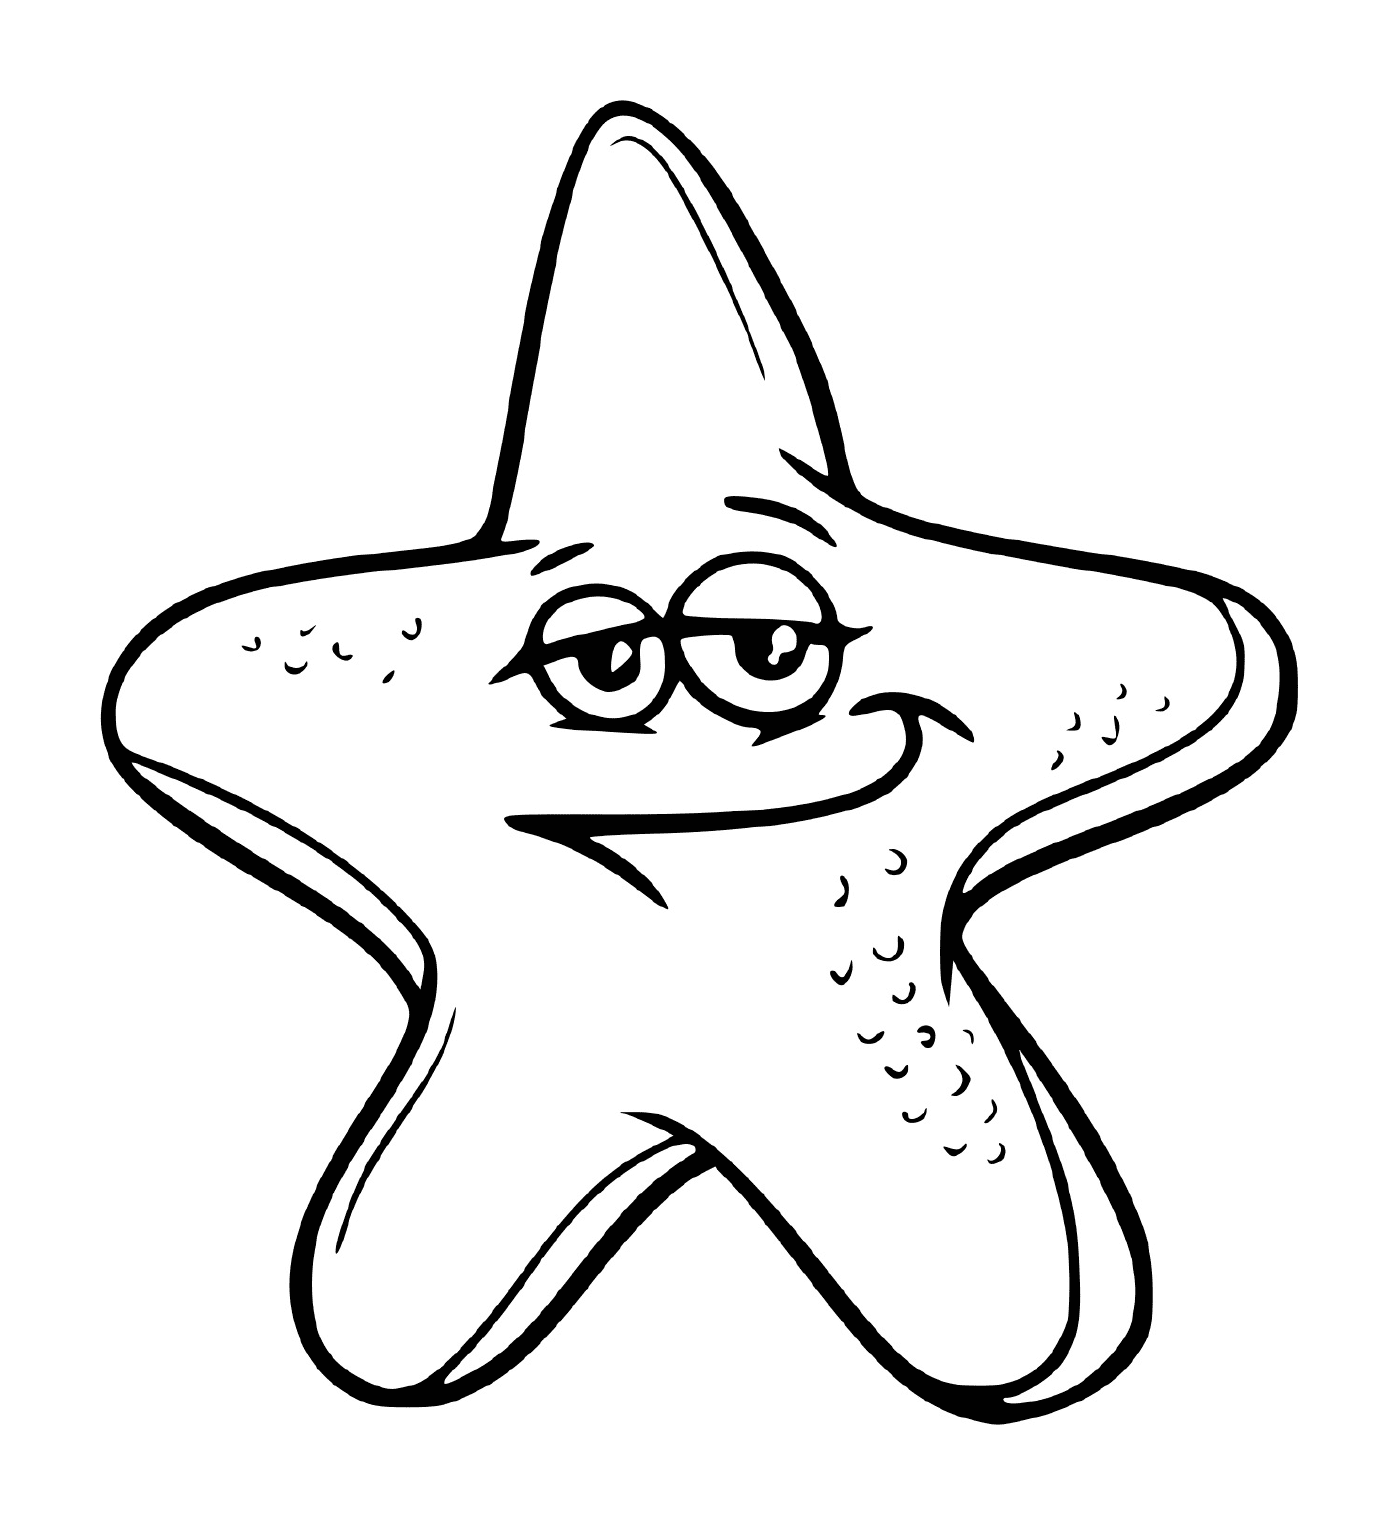   Une étoile de mer en forme d'étoile 